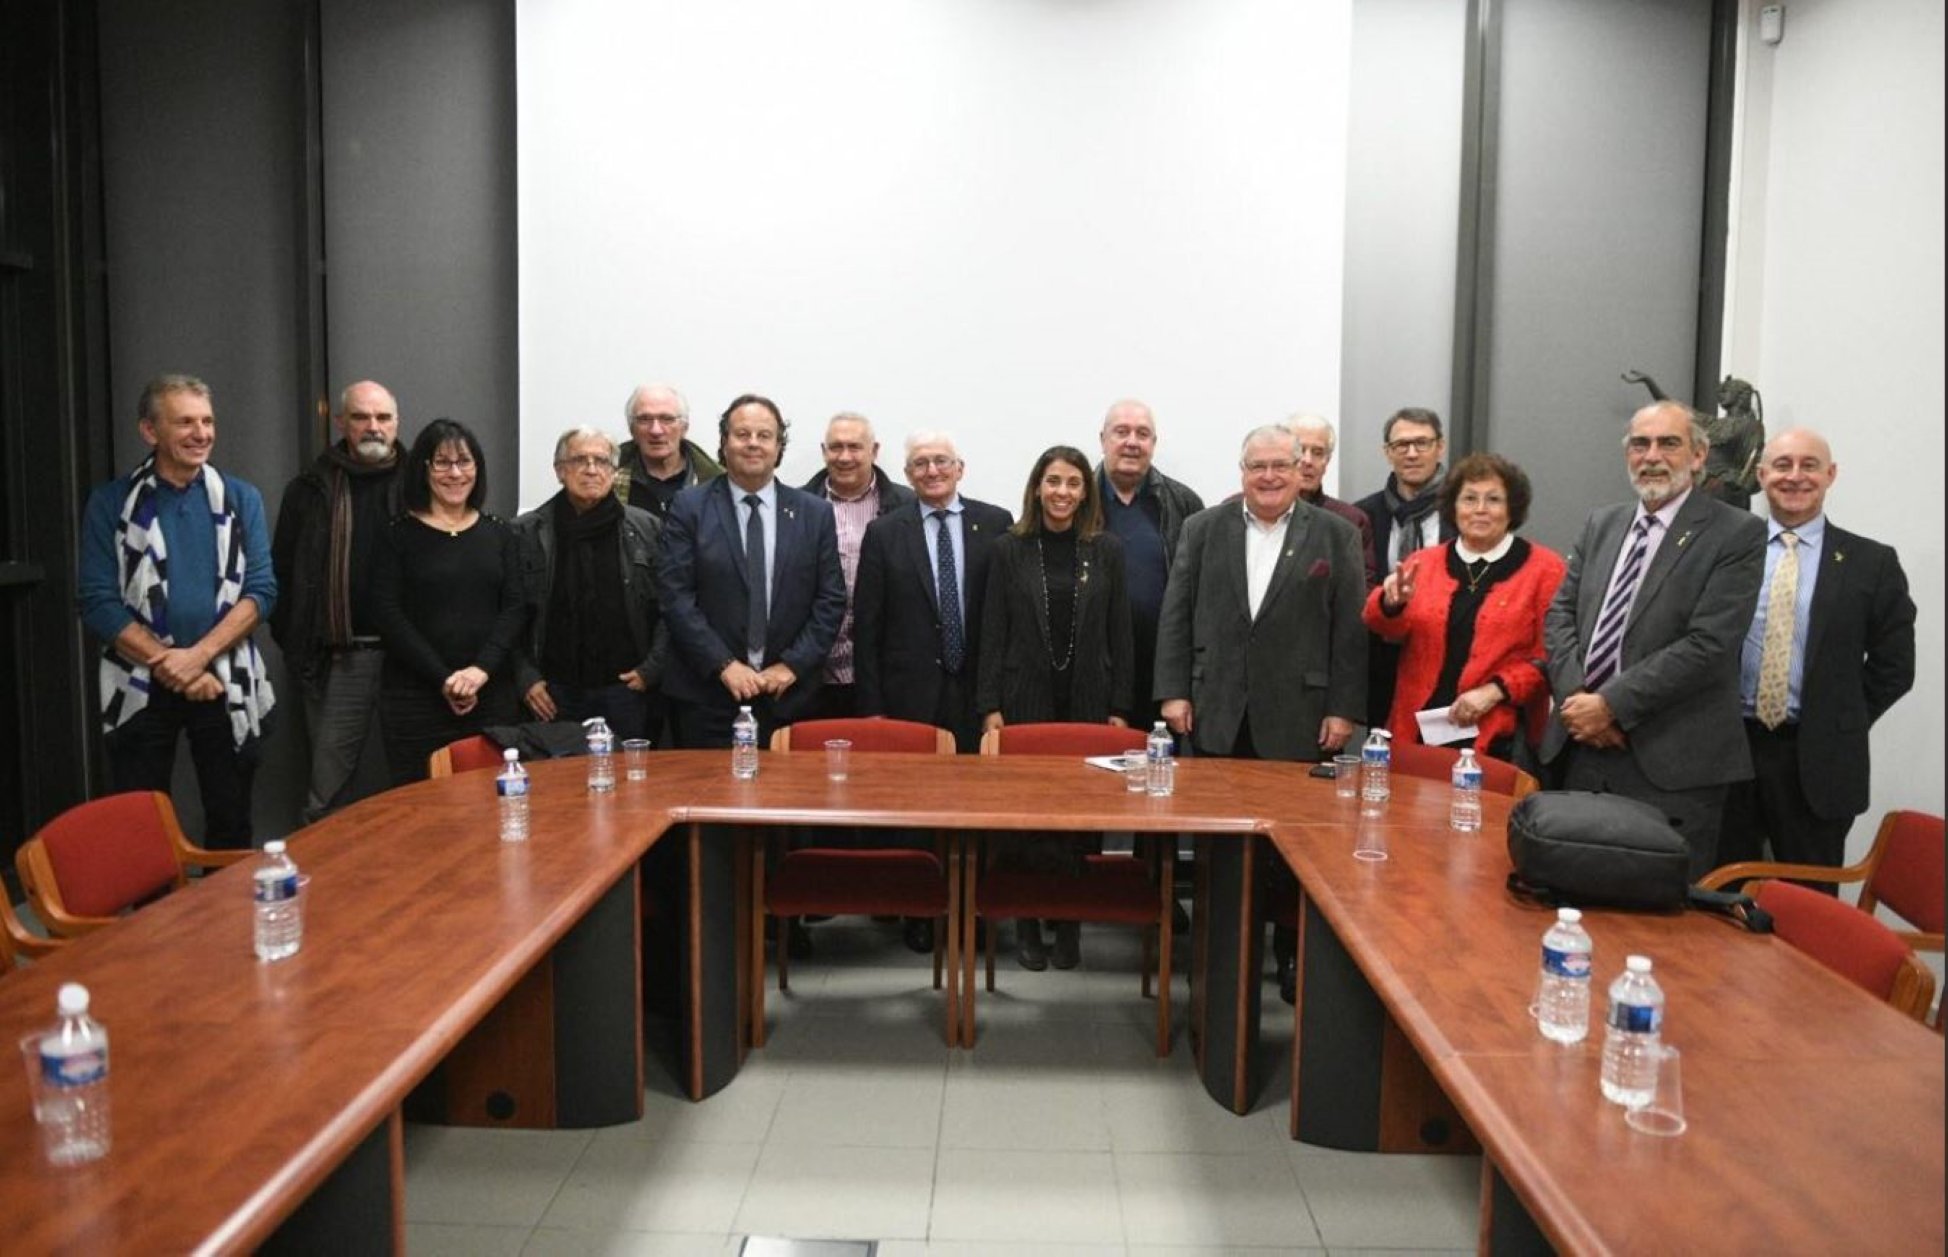 Meritxell Budó agradece a 110 alcaldes norcatalanes su apoyo contra la represión